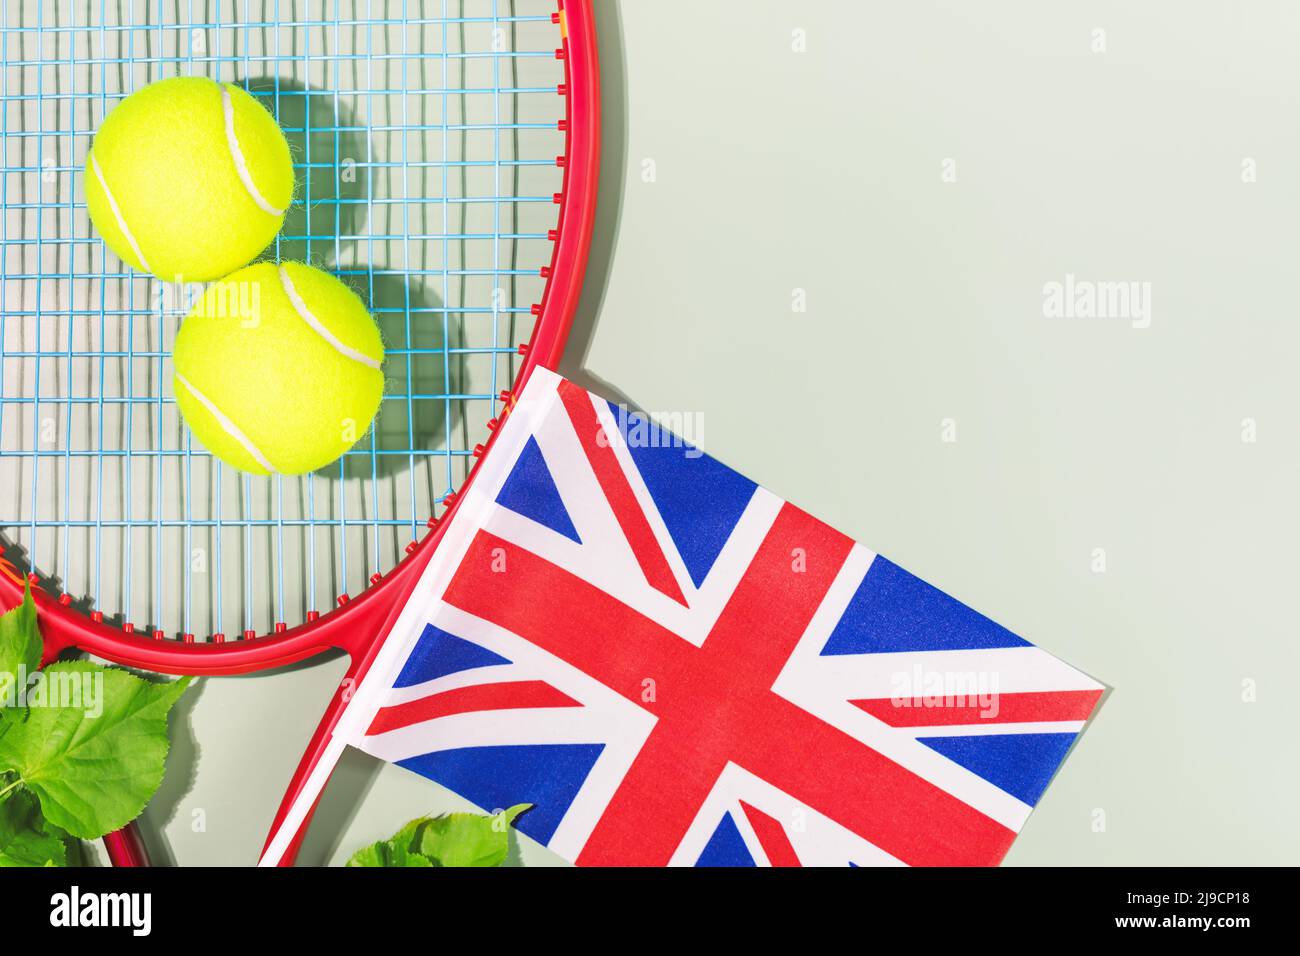 Balles de tennis, raquette avec le drapeau de la Grande-Bretagne Banque D'Images